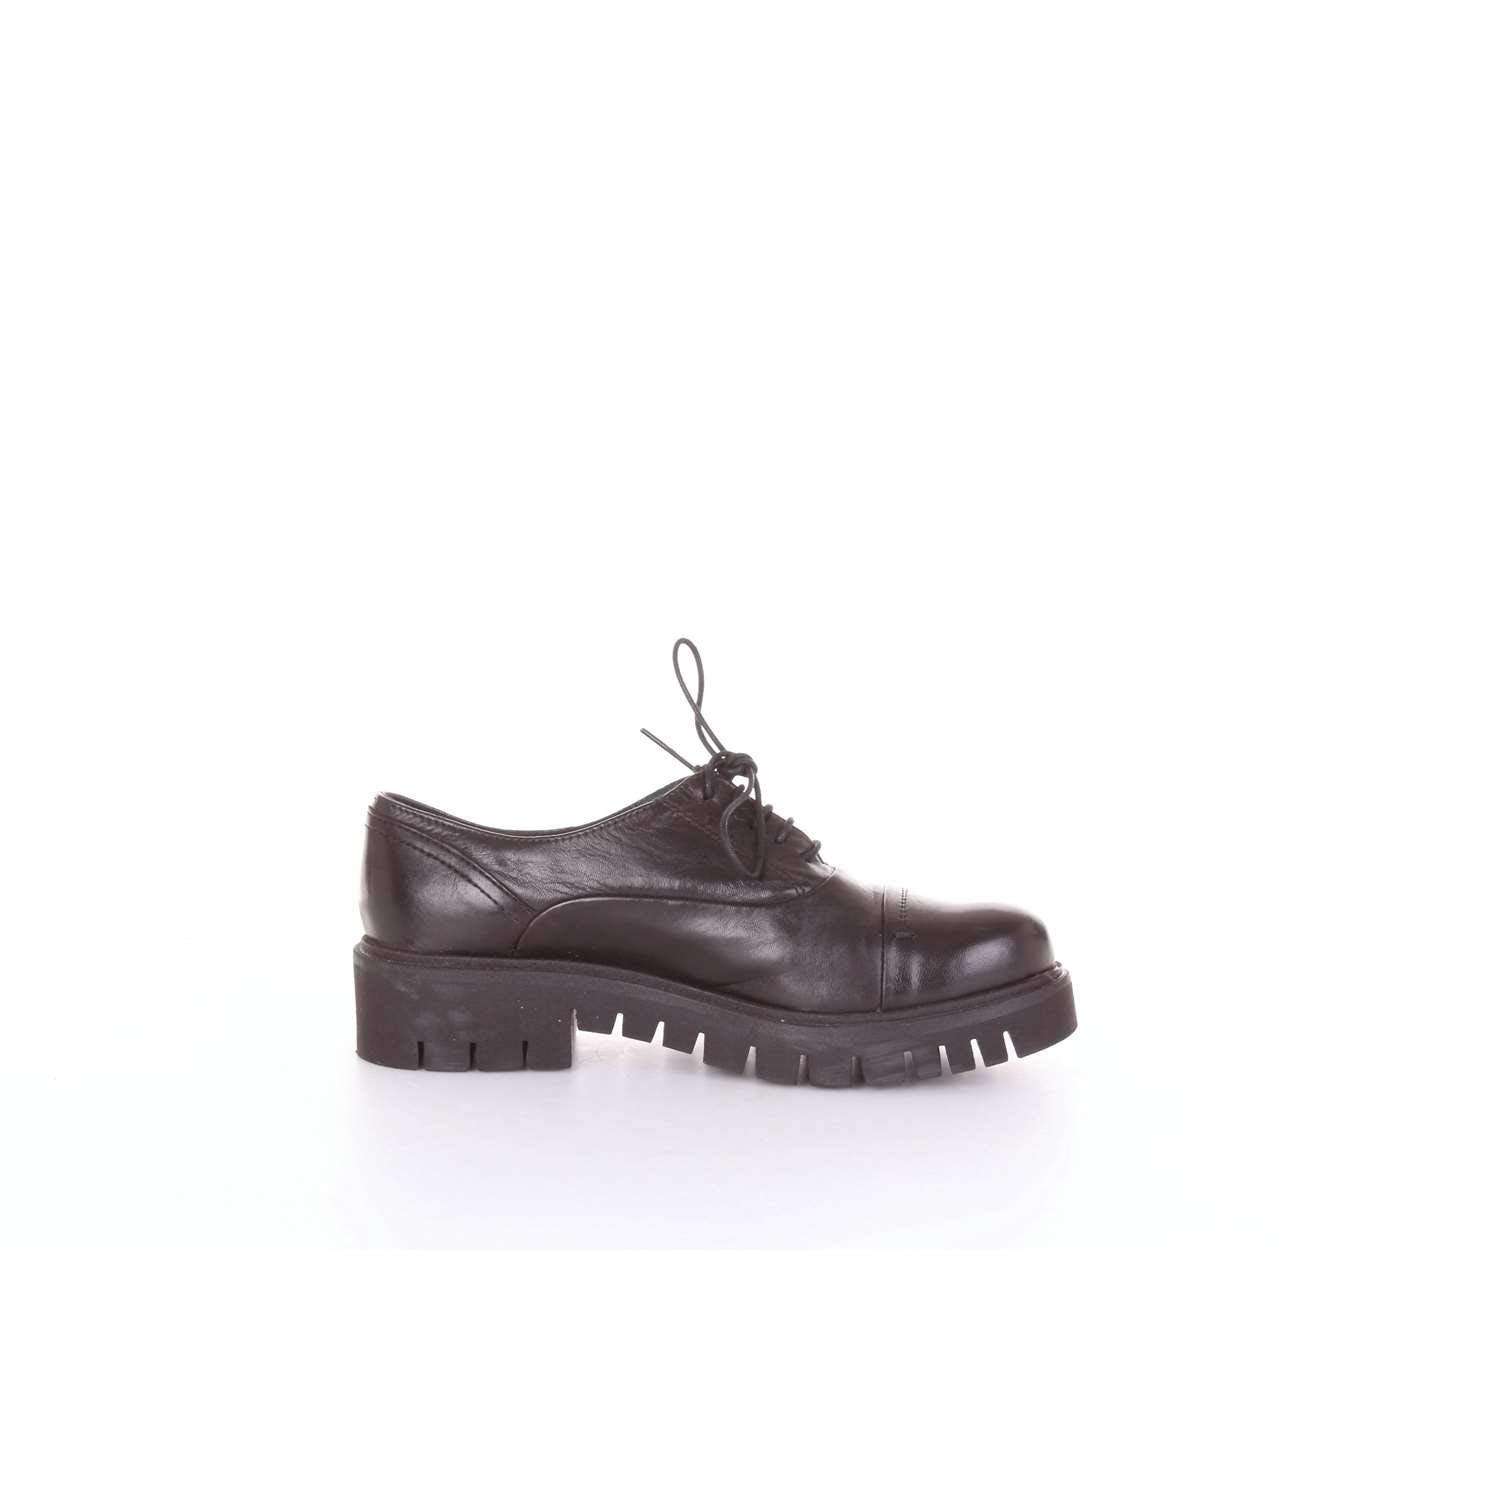 Scarpe stringate Fabbrica dei Colli 2STEEL101 in pelle nera • Jobcalzature  - negozio dedicato alla moda uomo e donna di qualità!